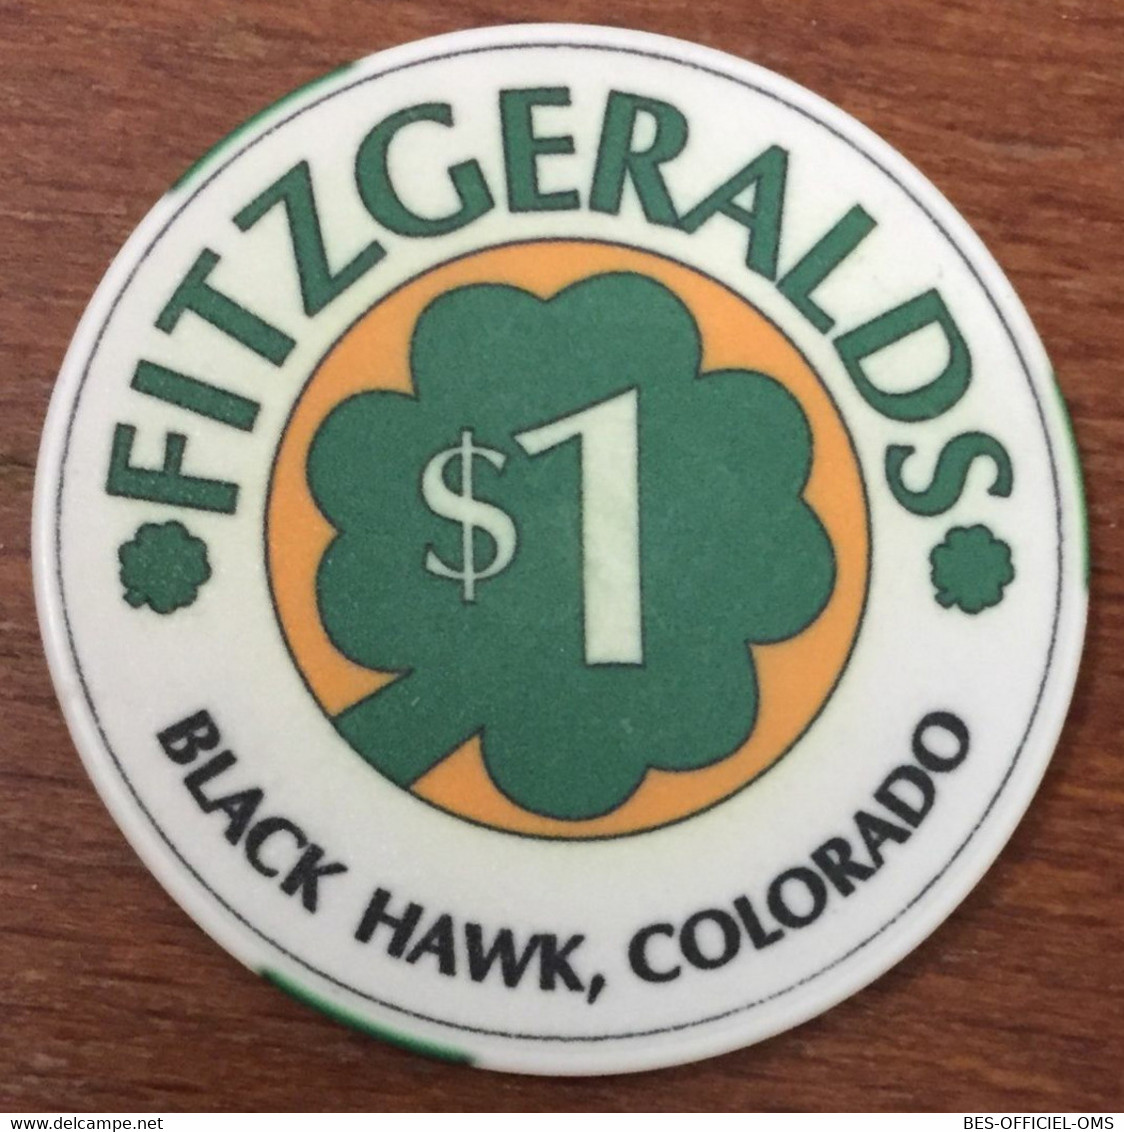 ÉTATS-UNIS USA COLORADO BLACK HAWK FITZGERALGS CASINO CHIP $ 1 JETON TOKENS COINS CLOSED FERMÉ - Casino